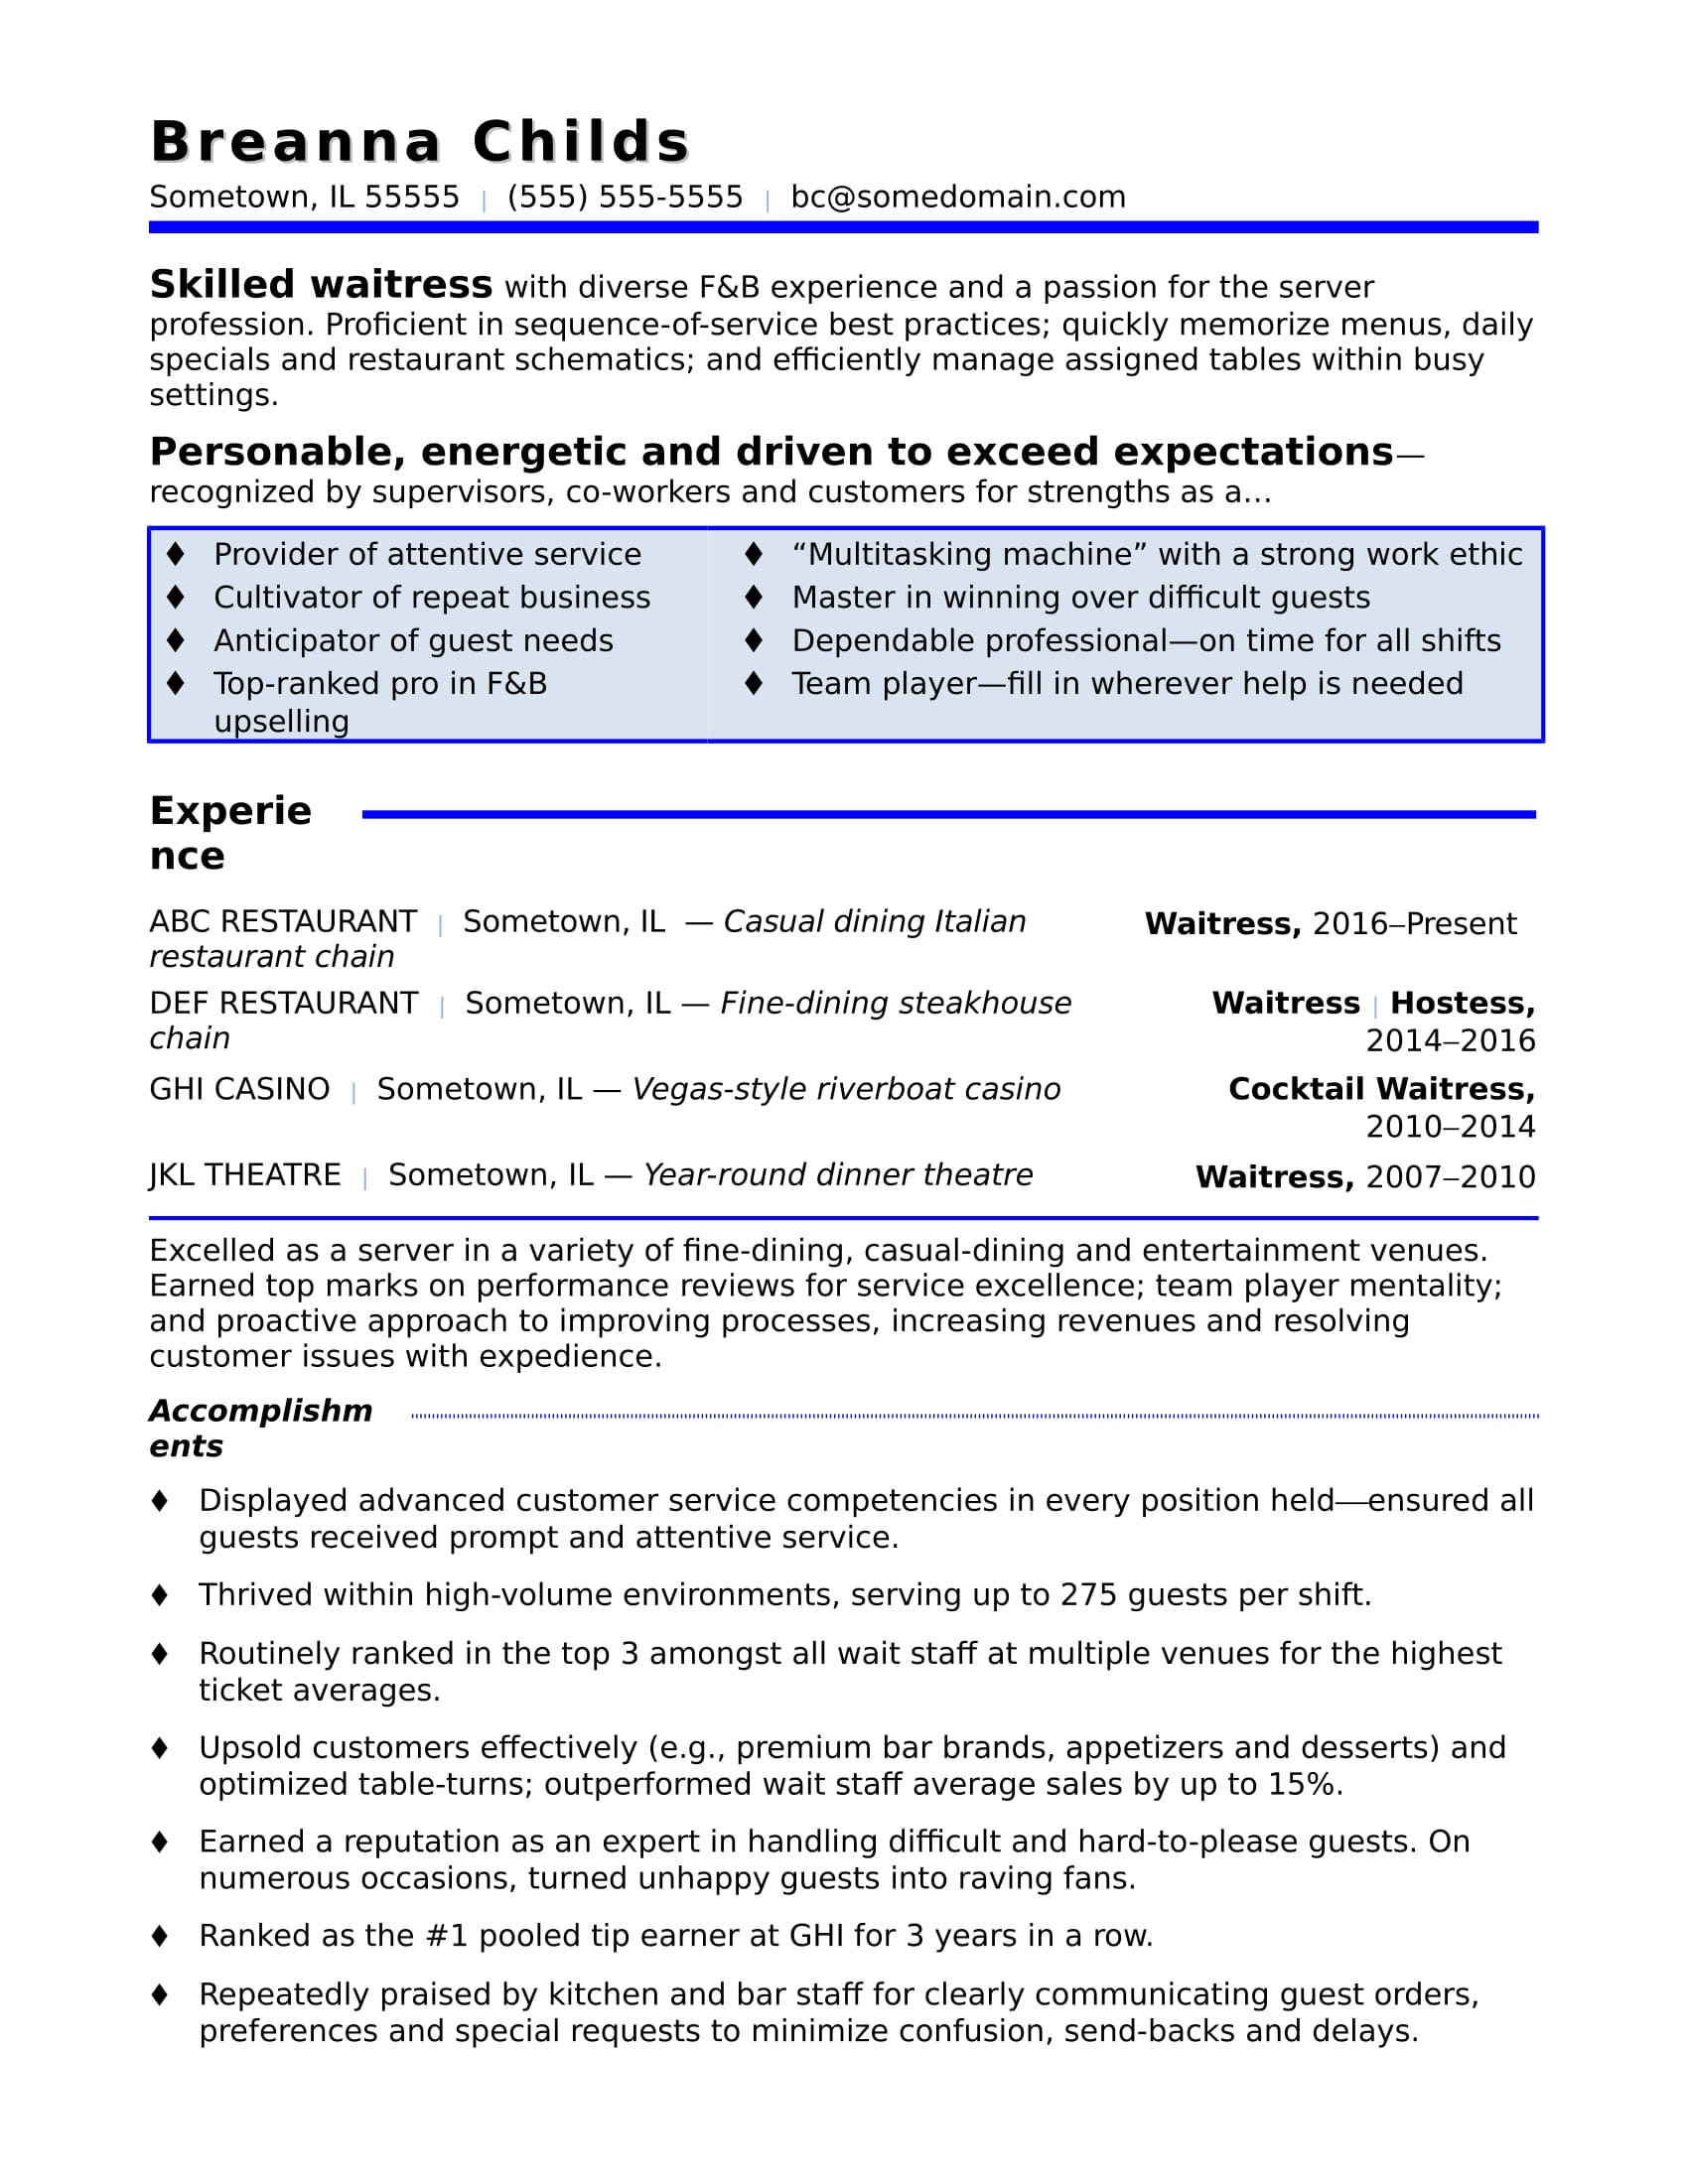 Sample Of Resume for Restaurant Server Waitress Resume Monster.com